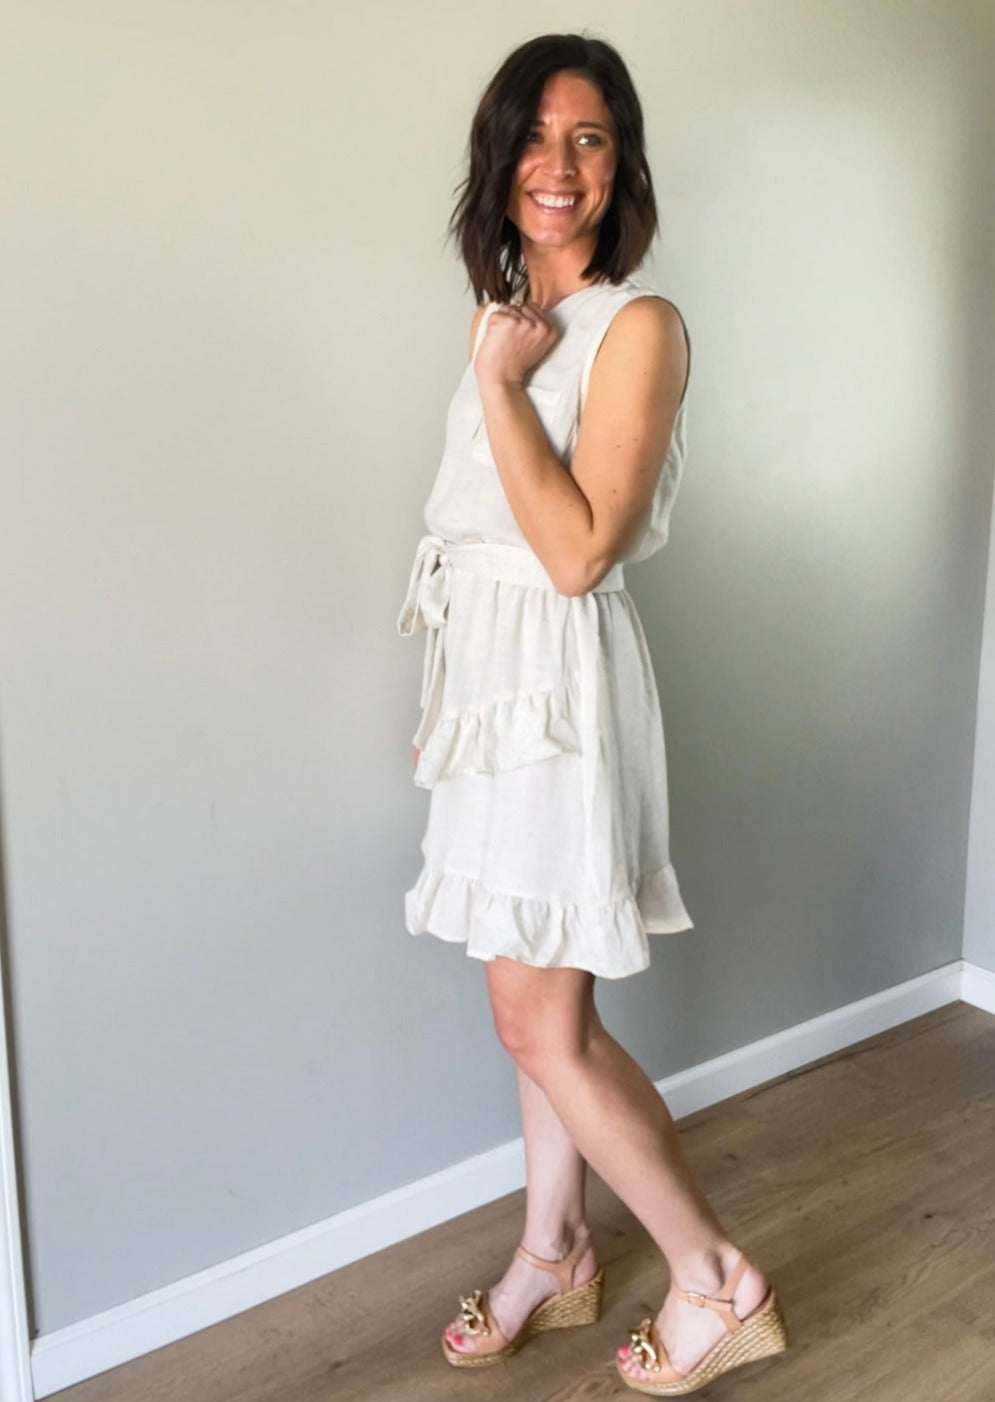 Light cream linen summer sleeveless dress with ruffle skirt and tie belt.